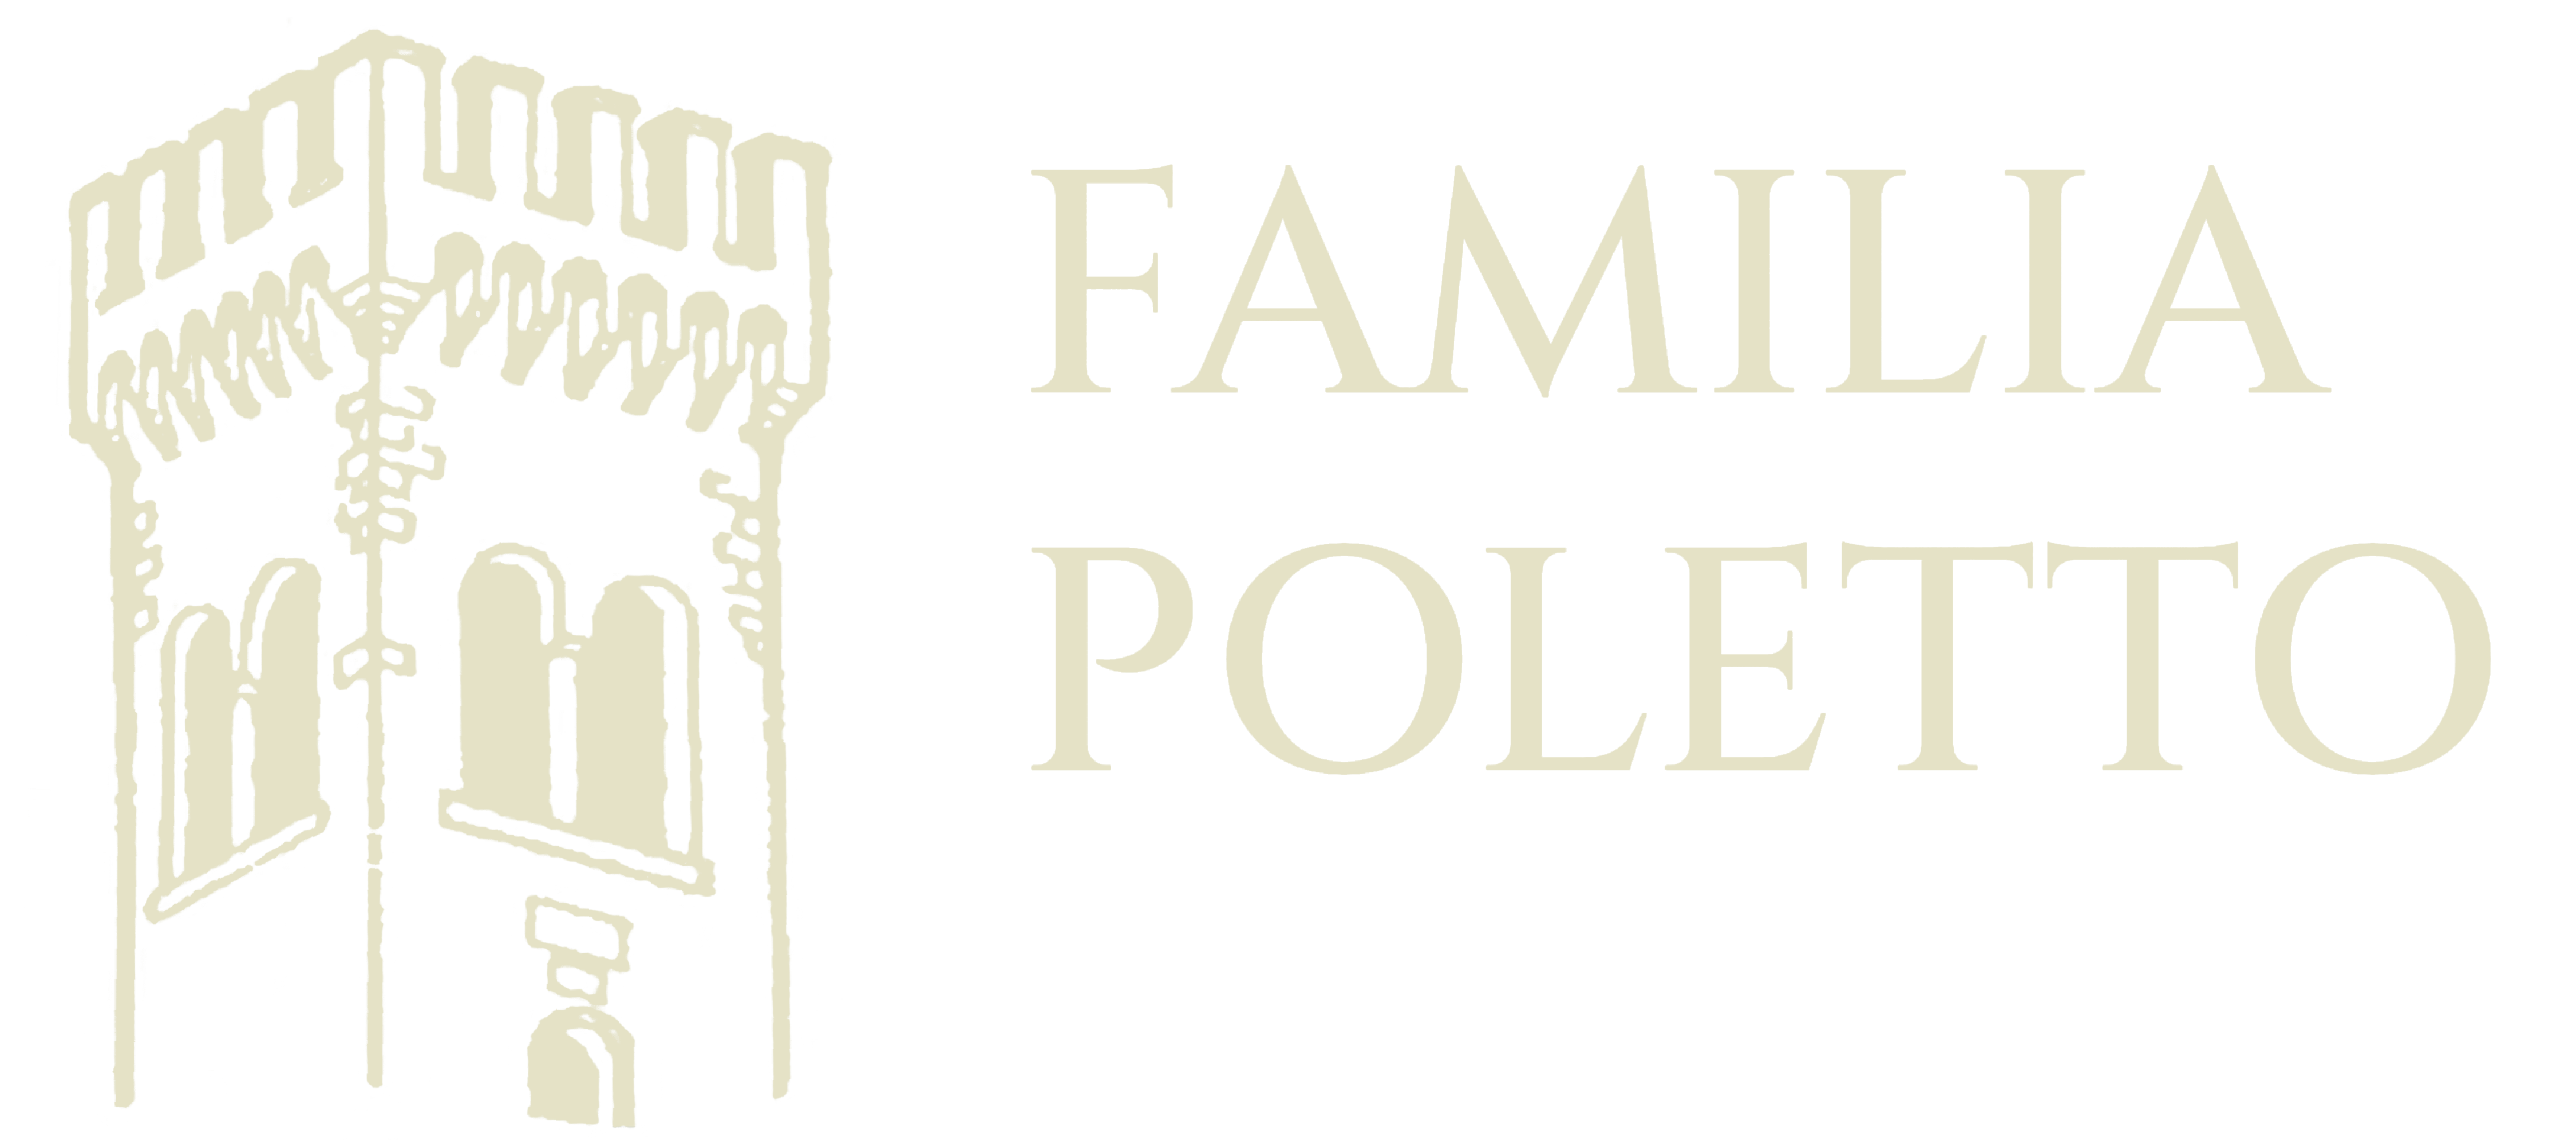 Familia Poletto | Prosecco e vino dall'Italia